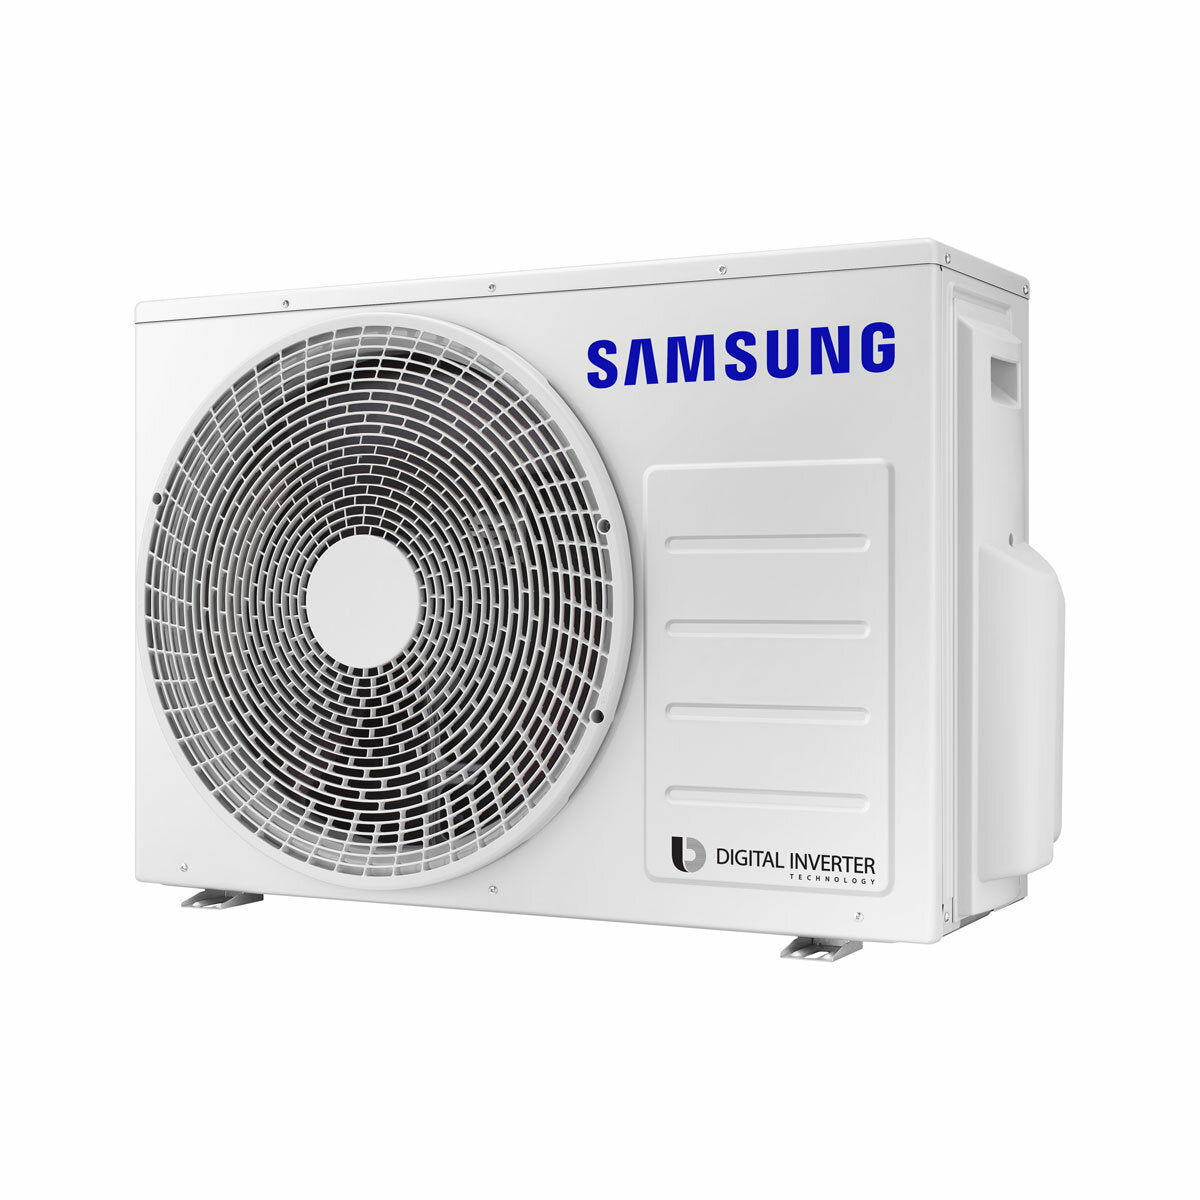 Samsung windfree Klimaanlage Avant Trial Split 7000 + 7000 + 7000 BTU Inverter A++ WLAN Außengerät 5,2 kW